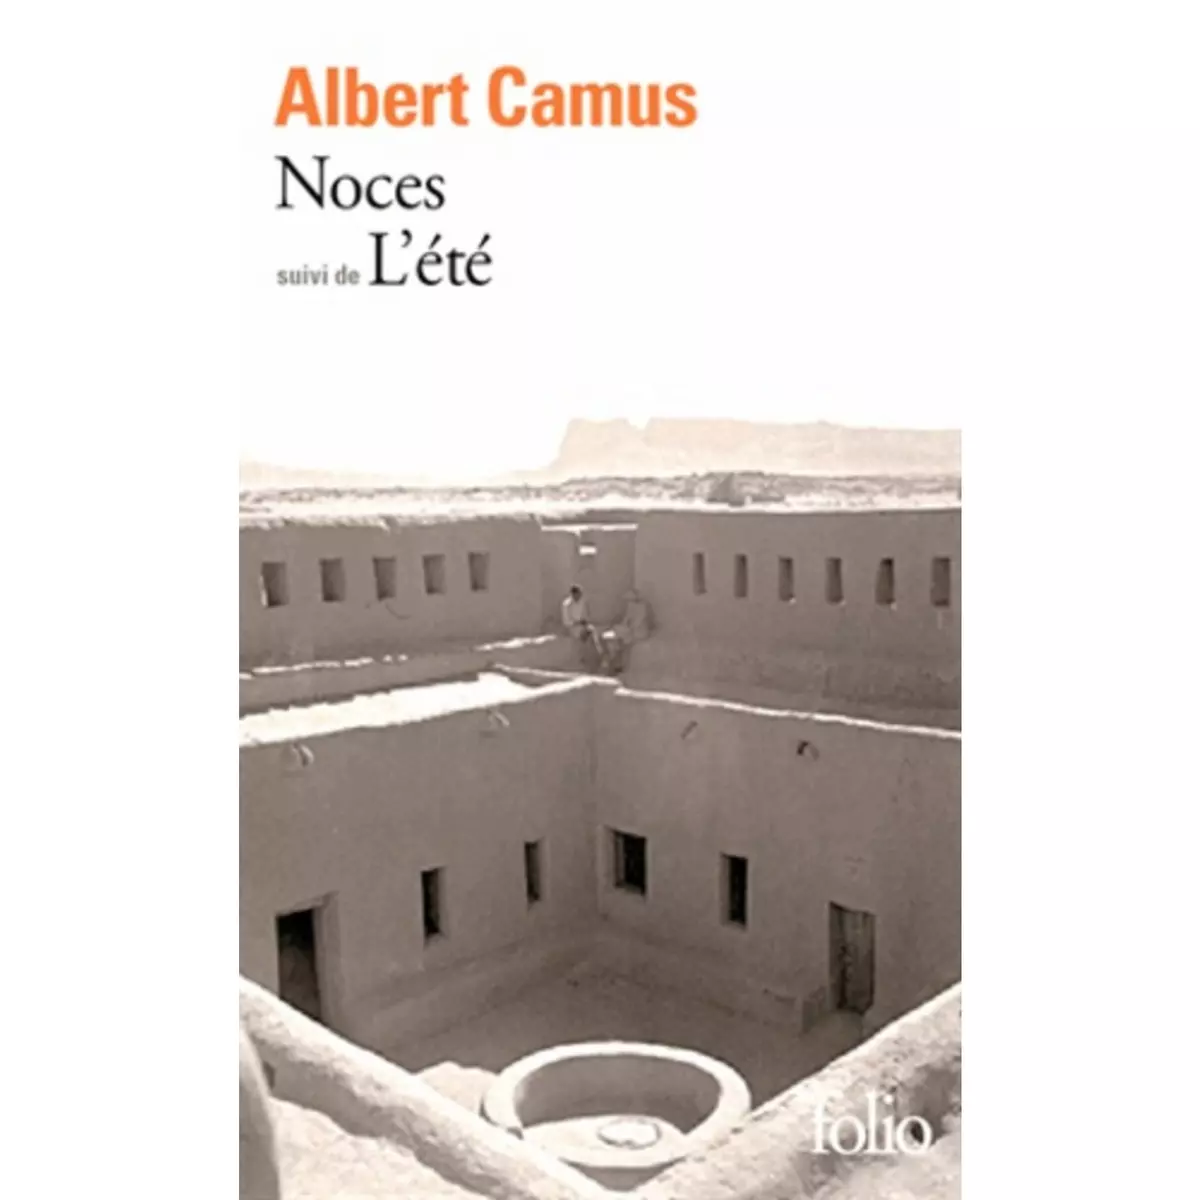  NOCES SUIVI DE L'ETE, Camus Albert